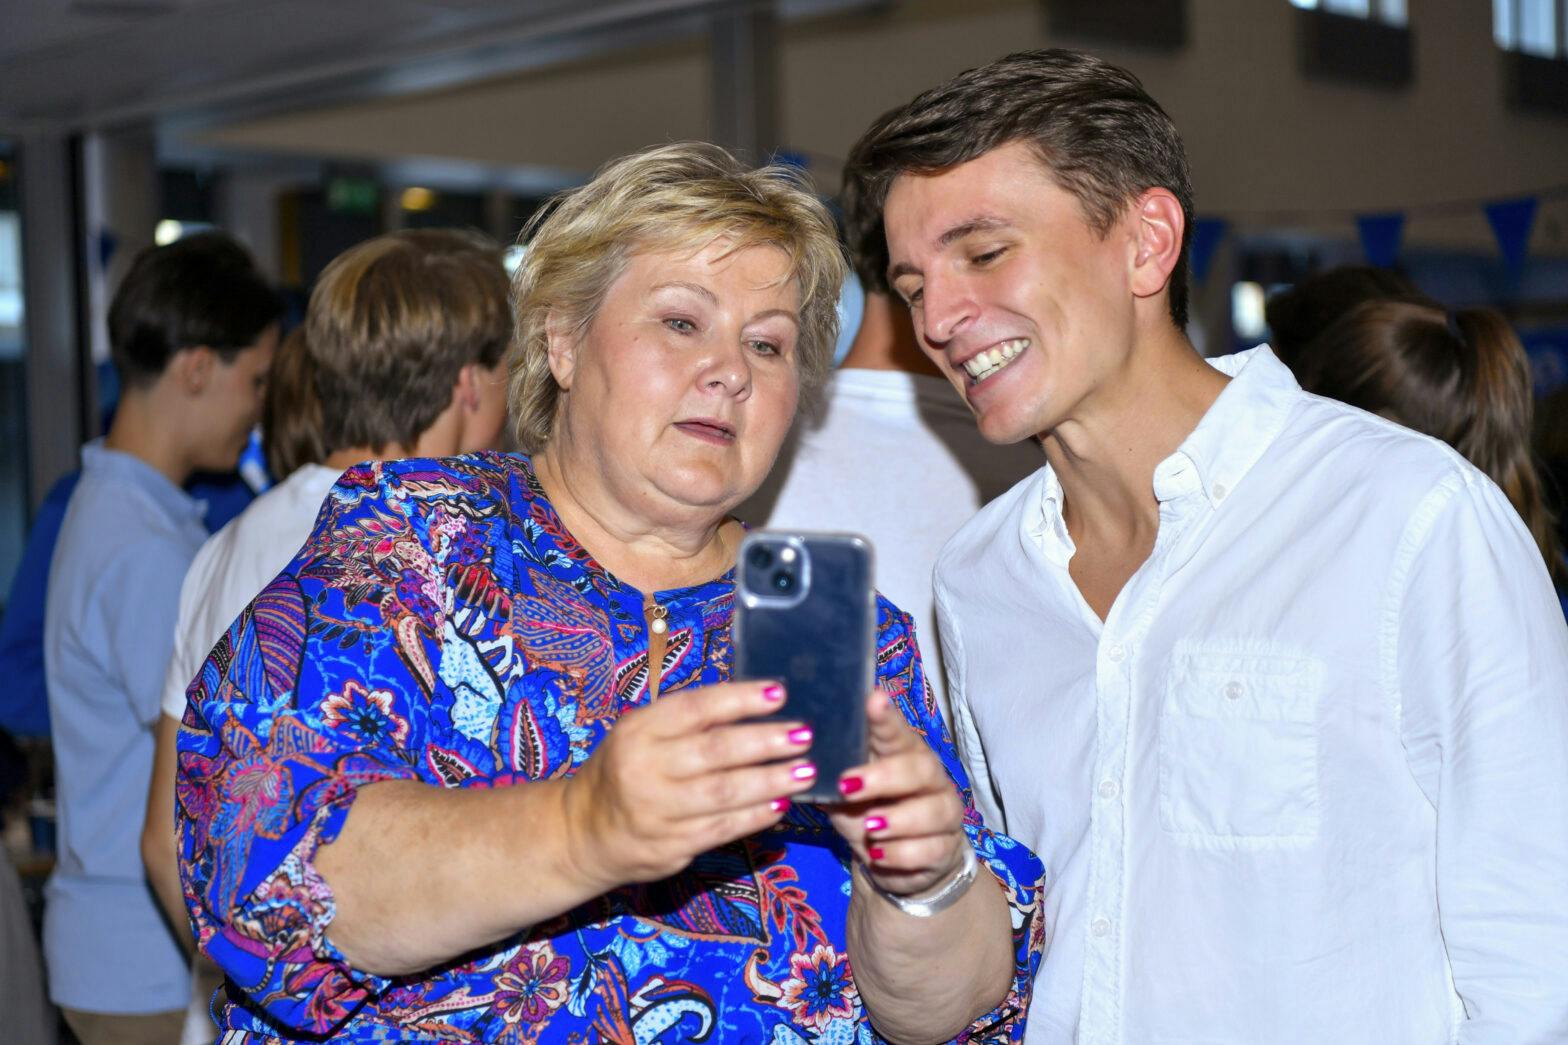 En kvinne iført en blå skjorte og en ung mann ser på en mobiltelefon.